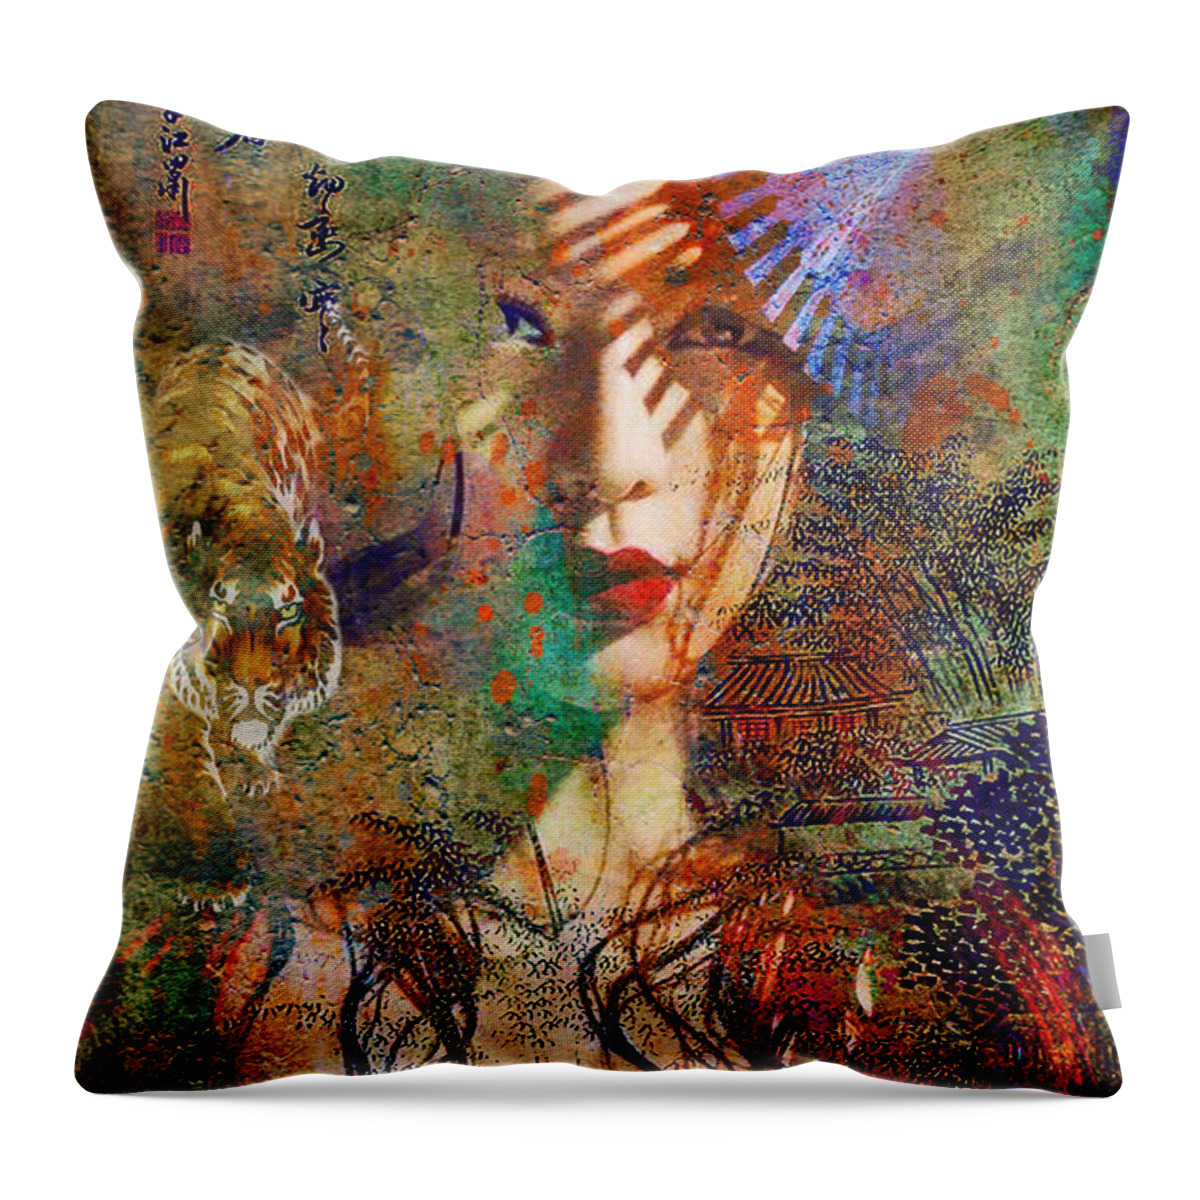 Geisha Throw Pillow featuring the digital art Geisha Print by Greg Sharpe